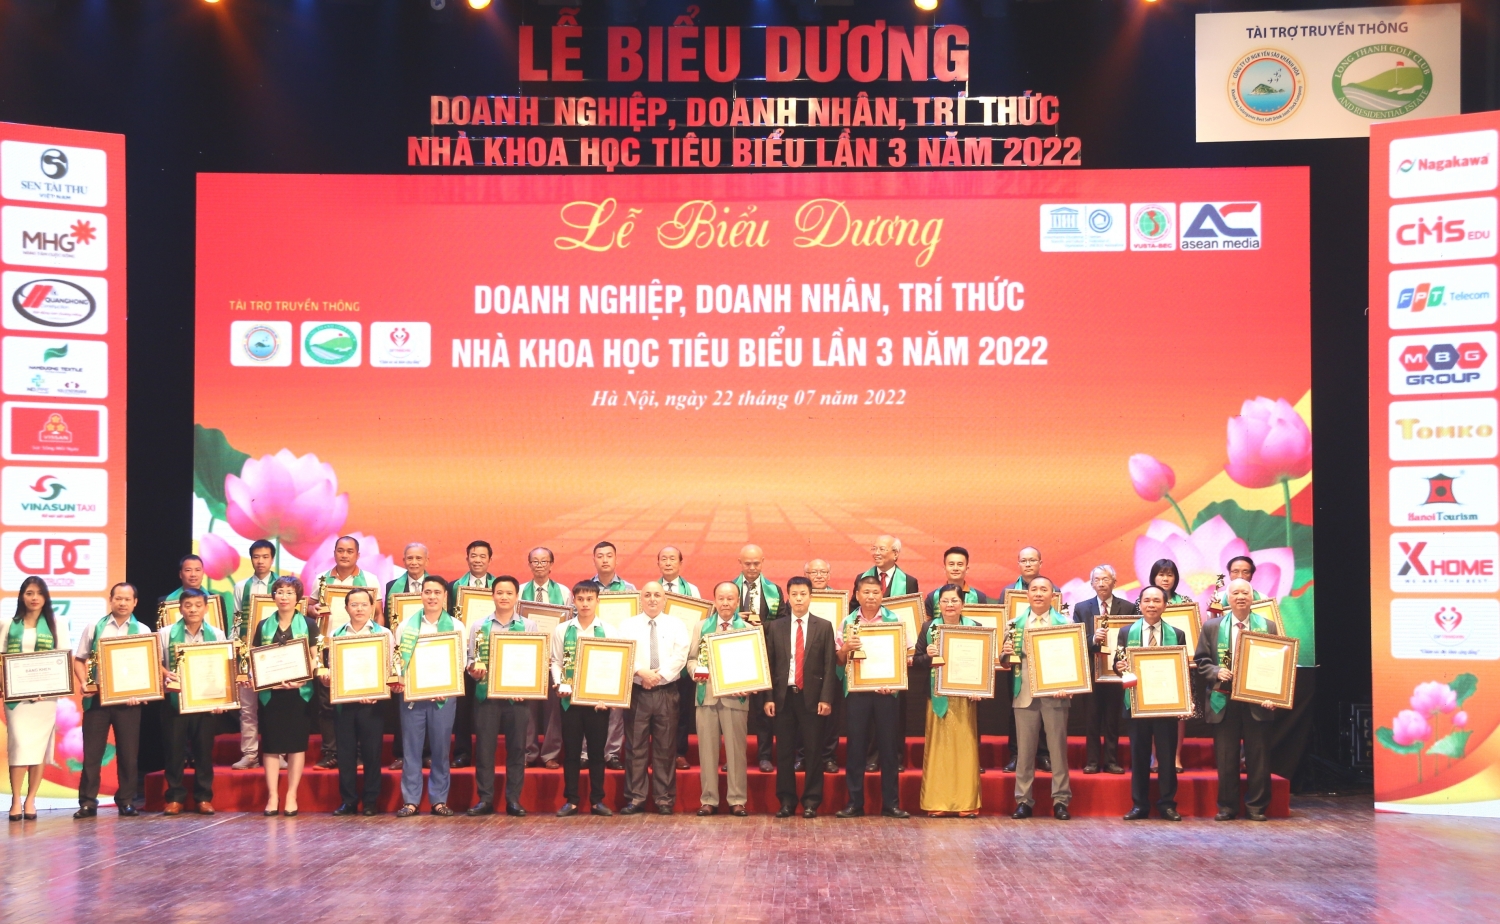 Tiến sĩ Nguyễn Quốc Thập – Chủ tịch Hội DKVN nhận vinh danh Trí thức, Nhà khoa học tiêu biểu năm 2022 của Liên hiệp các Hội UNESCO Việt Nam